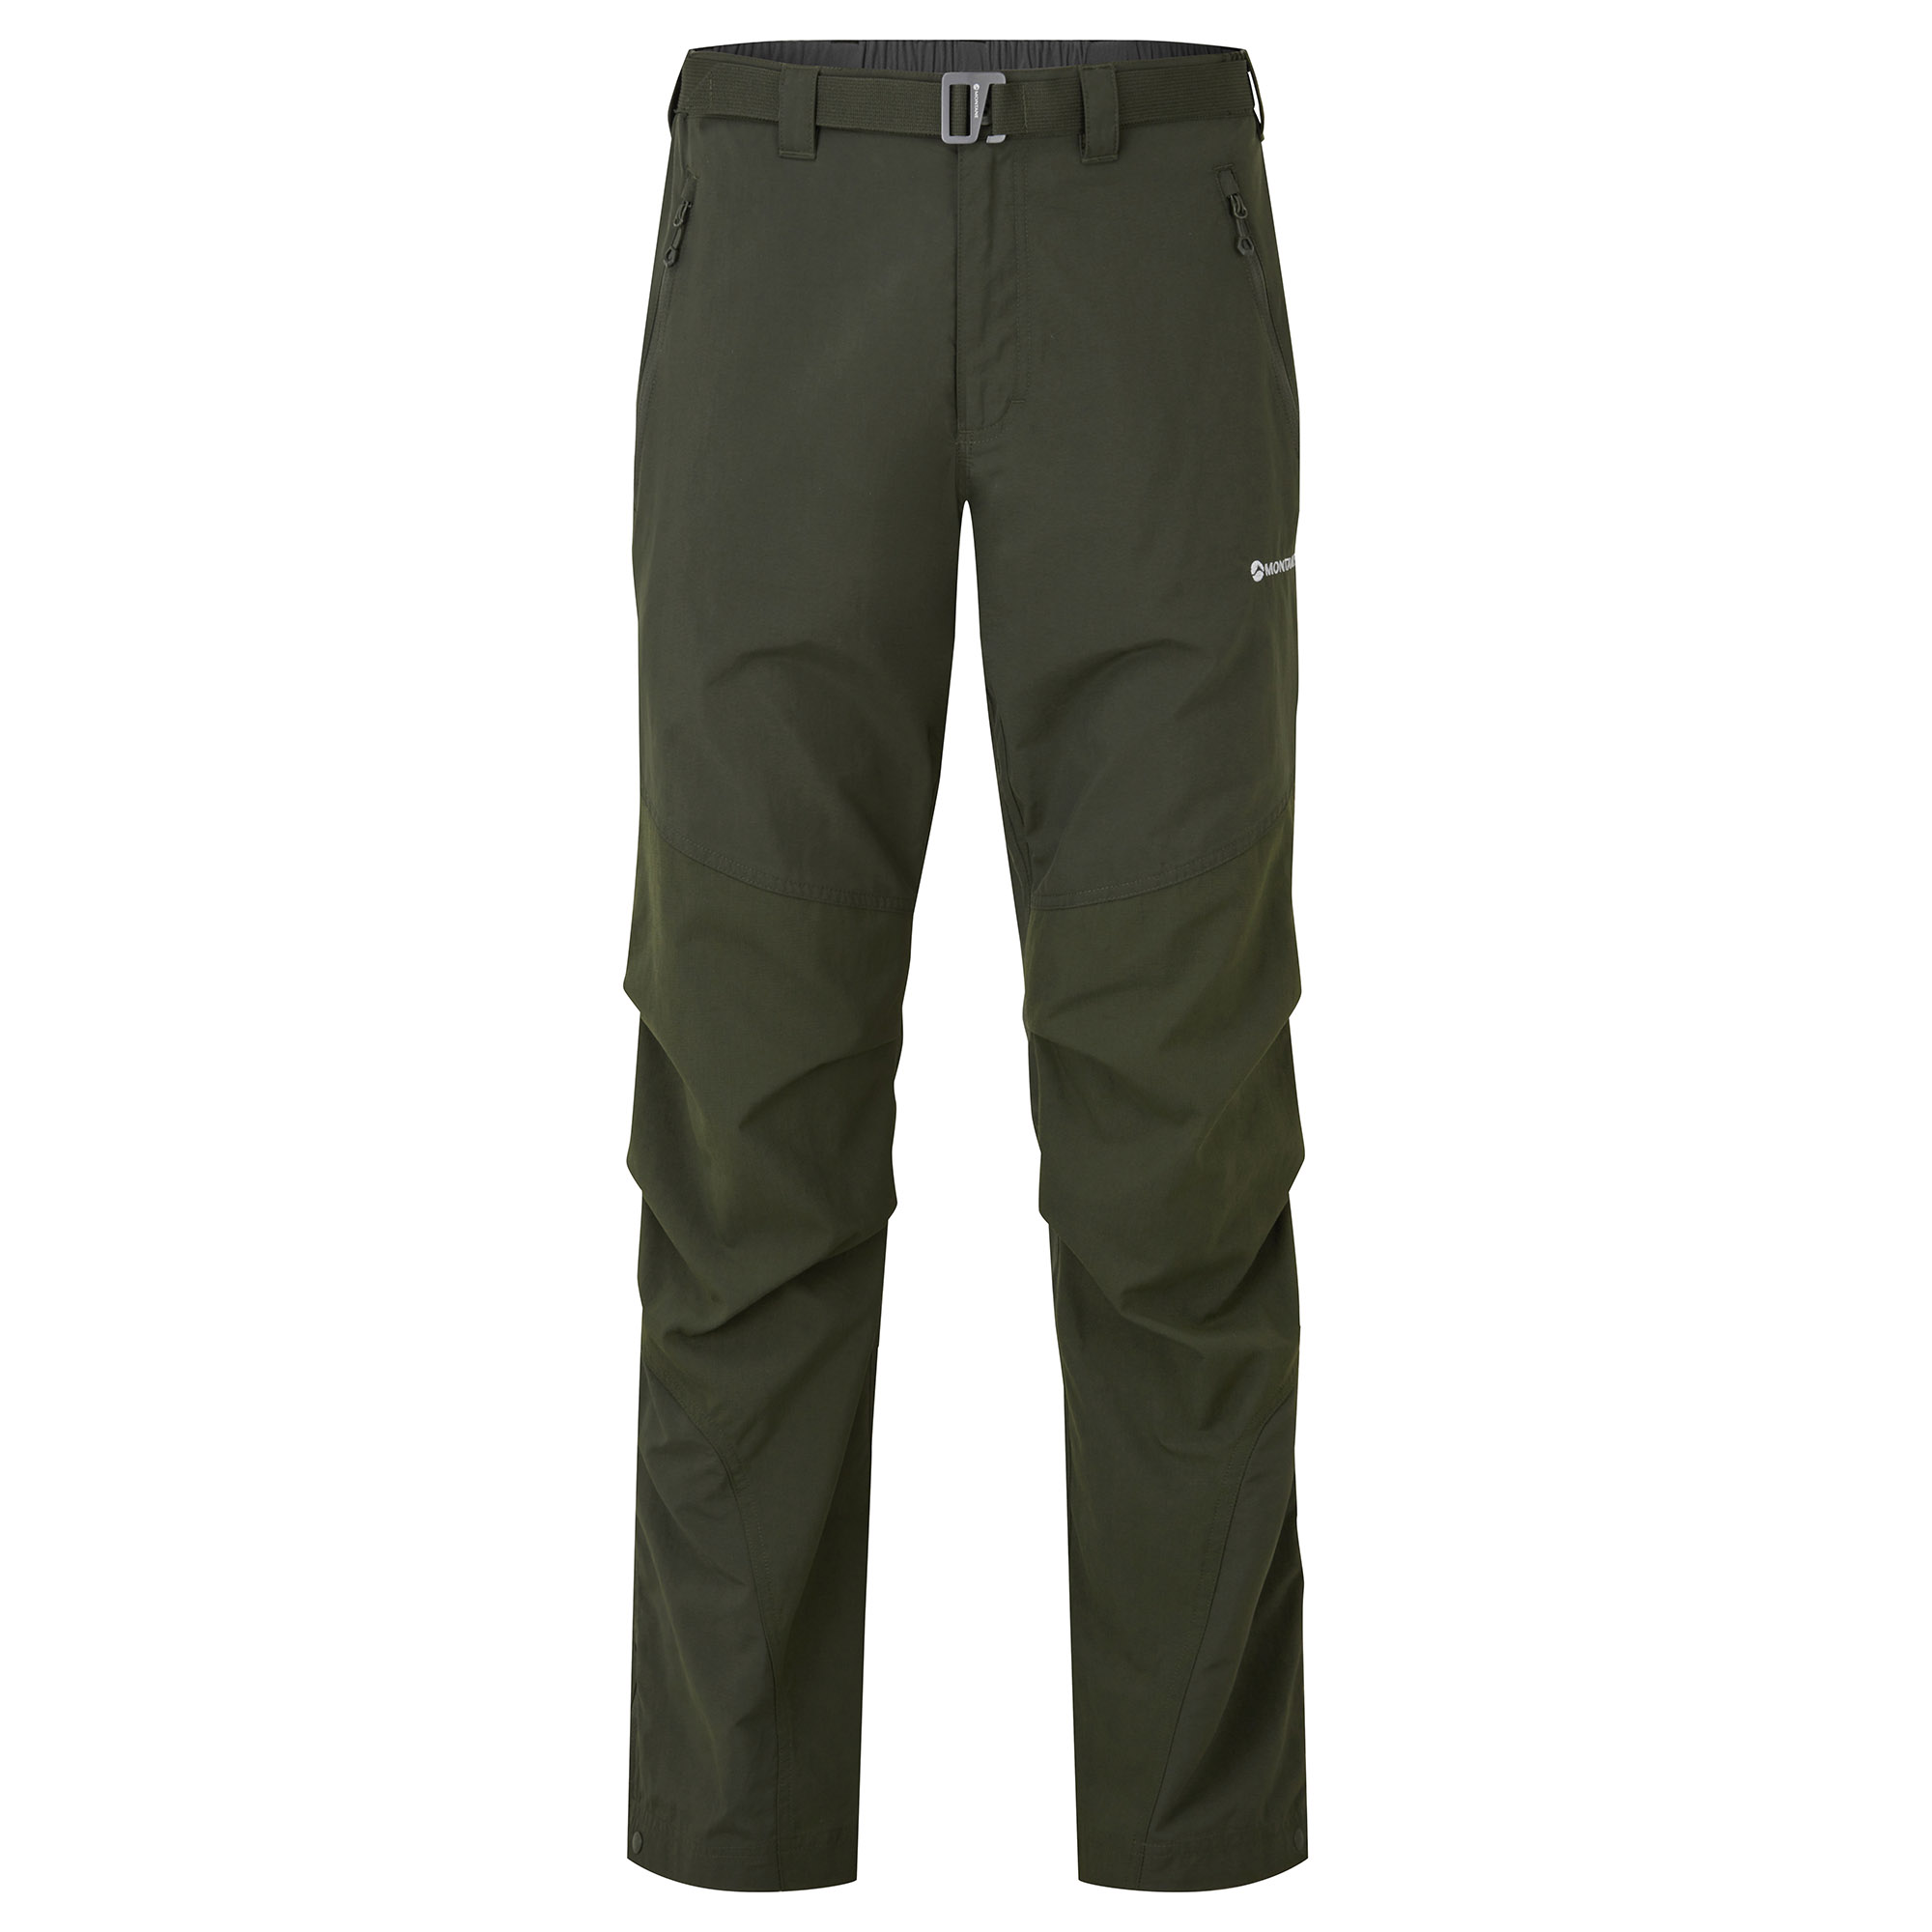 Montane pánské softshellové kalhoty Terra Pants - Prodloužené Nohavice Barva: Oak Green, Velikost: 38